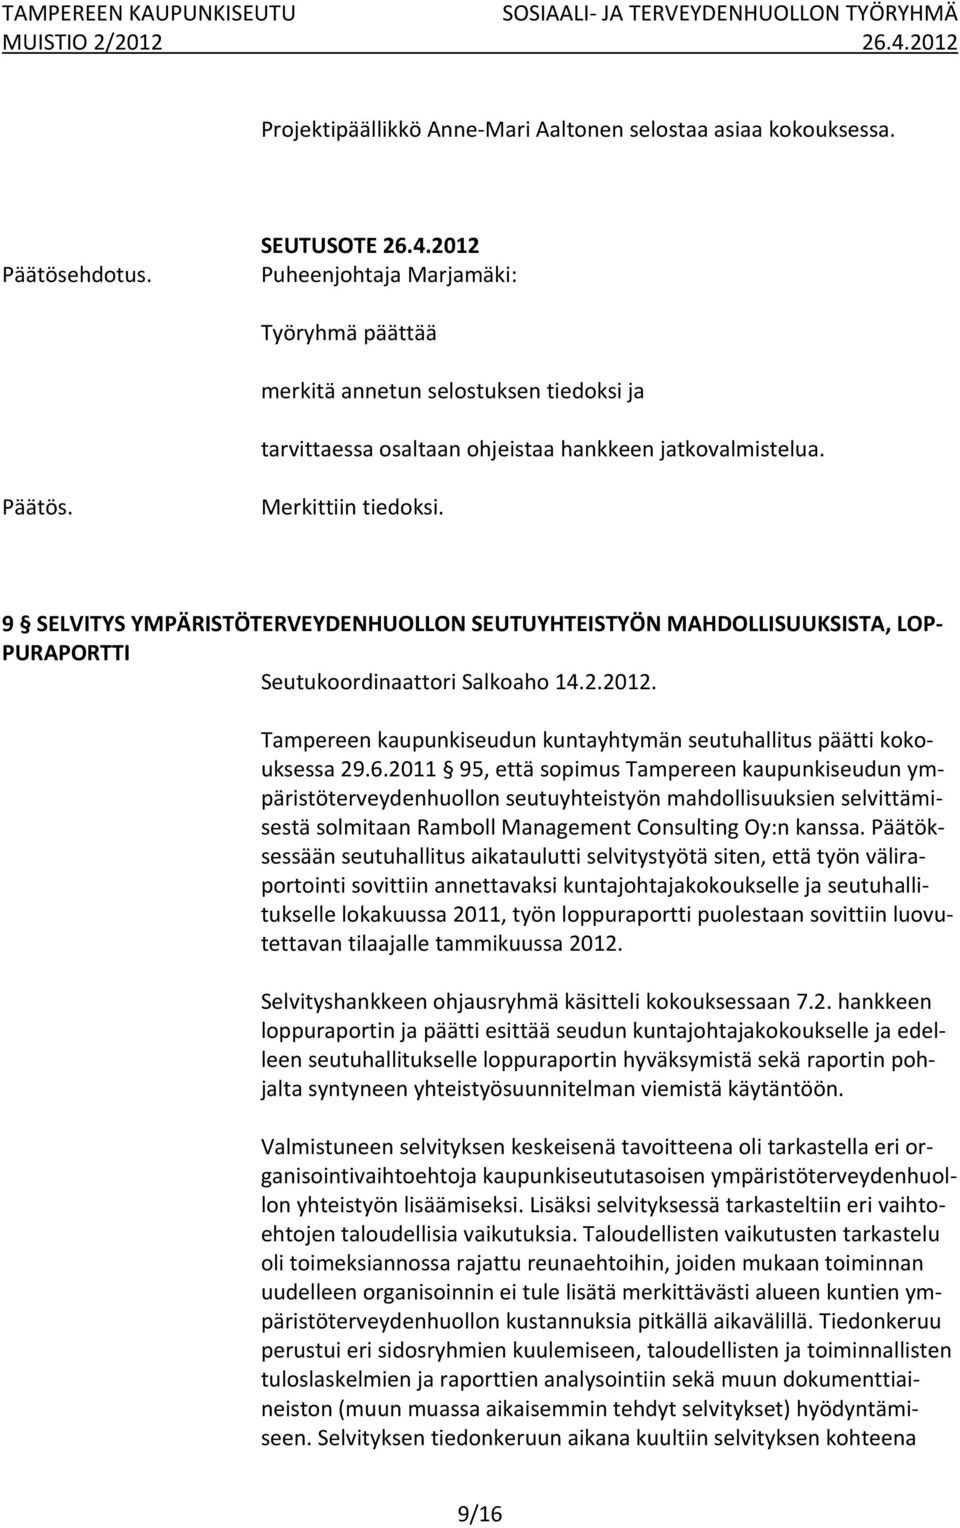 Tampereen kaupunkiseudun kuntayhtymän seutuhallitus päätti kokouksessa 29.6.